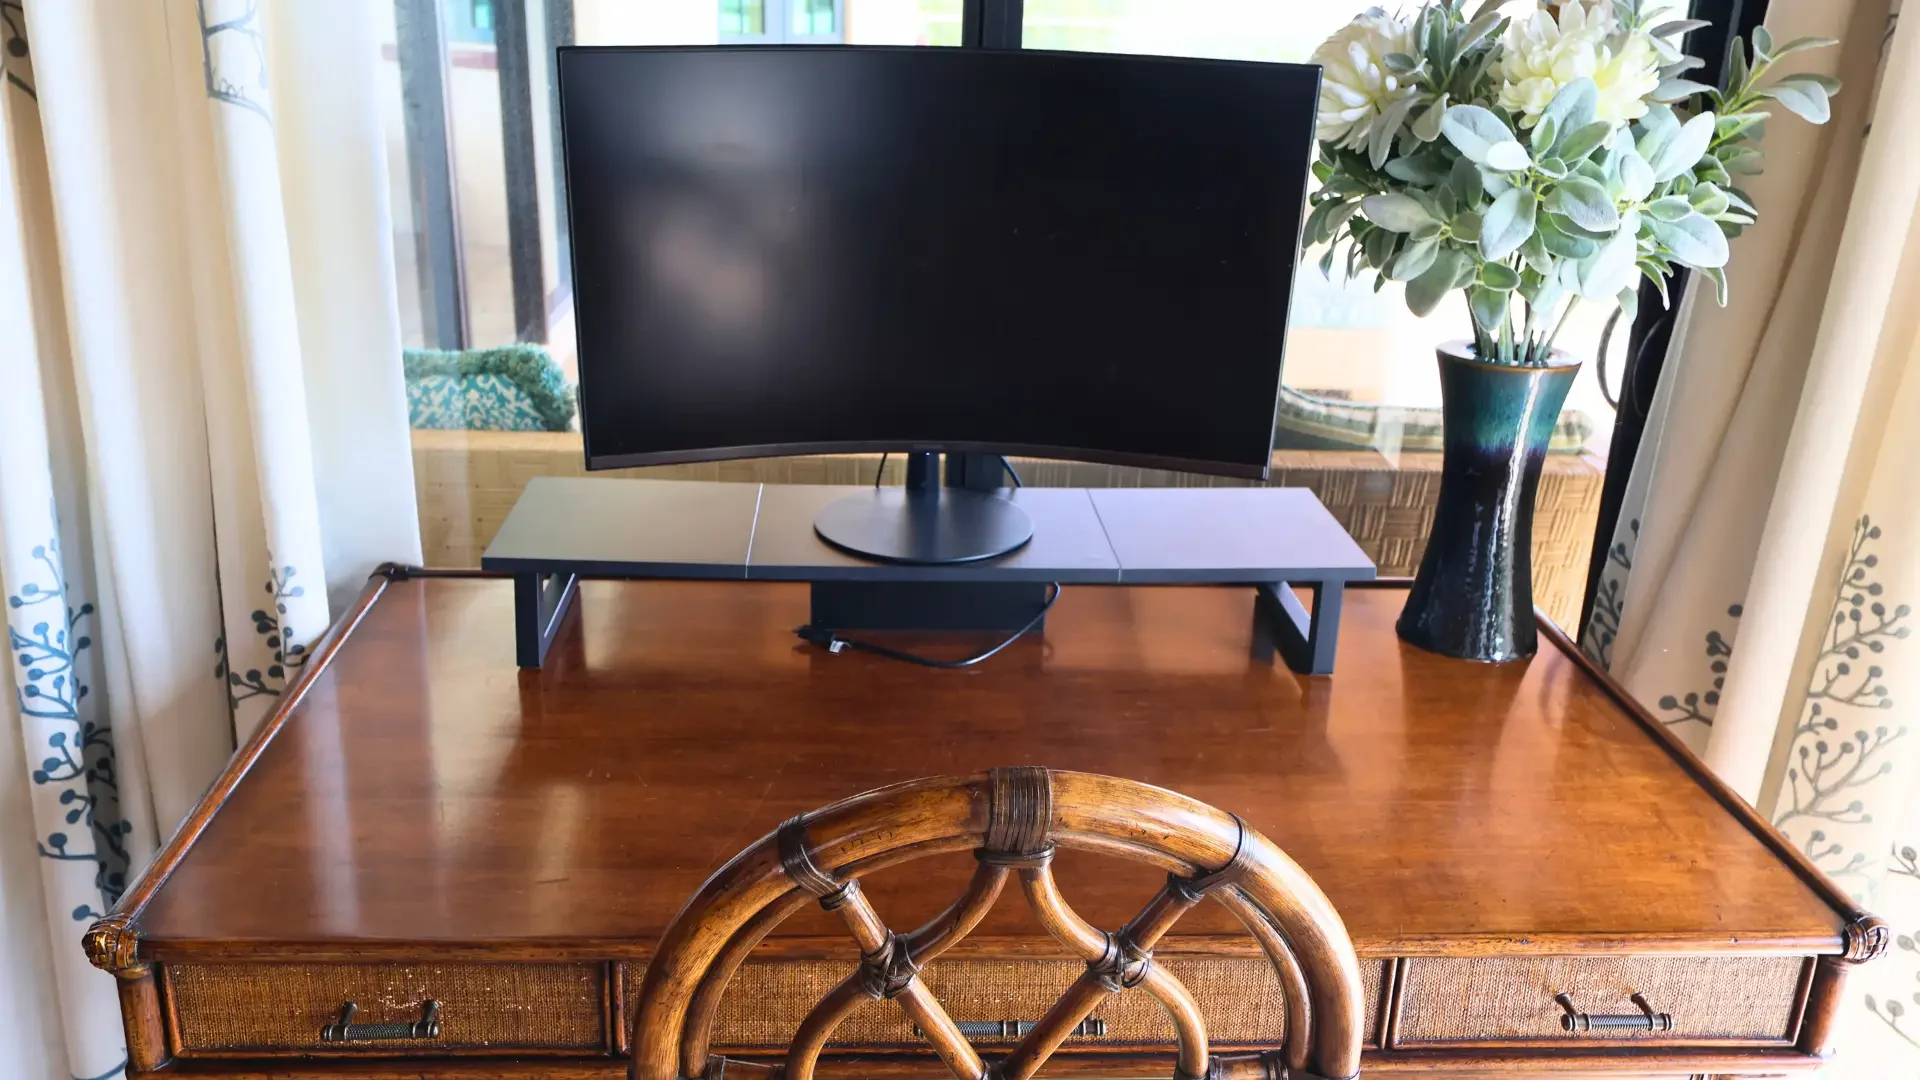 Large Monitor Desk/Workstation for Laptop in Main Bedroom